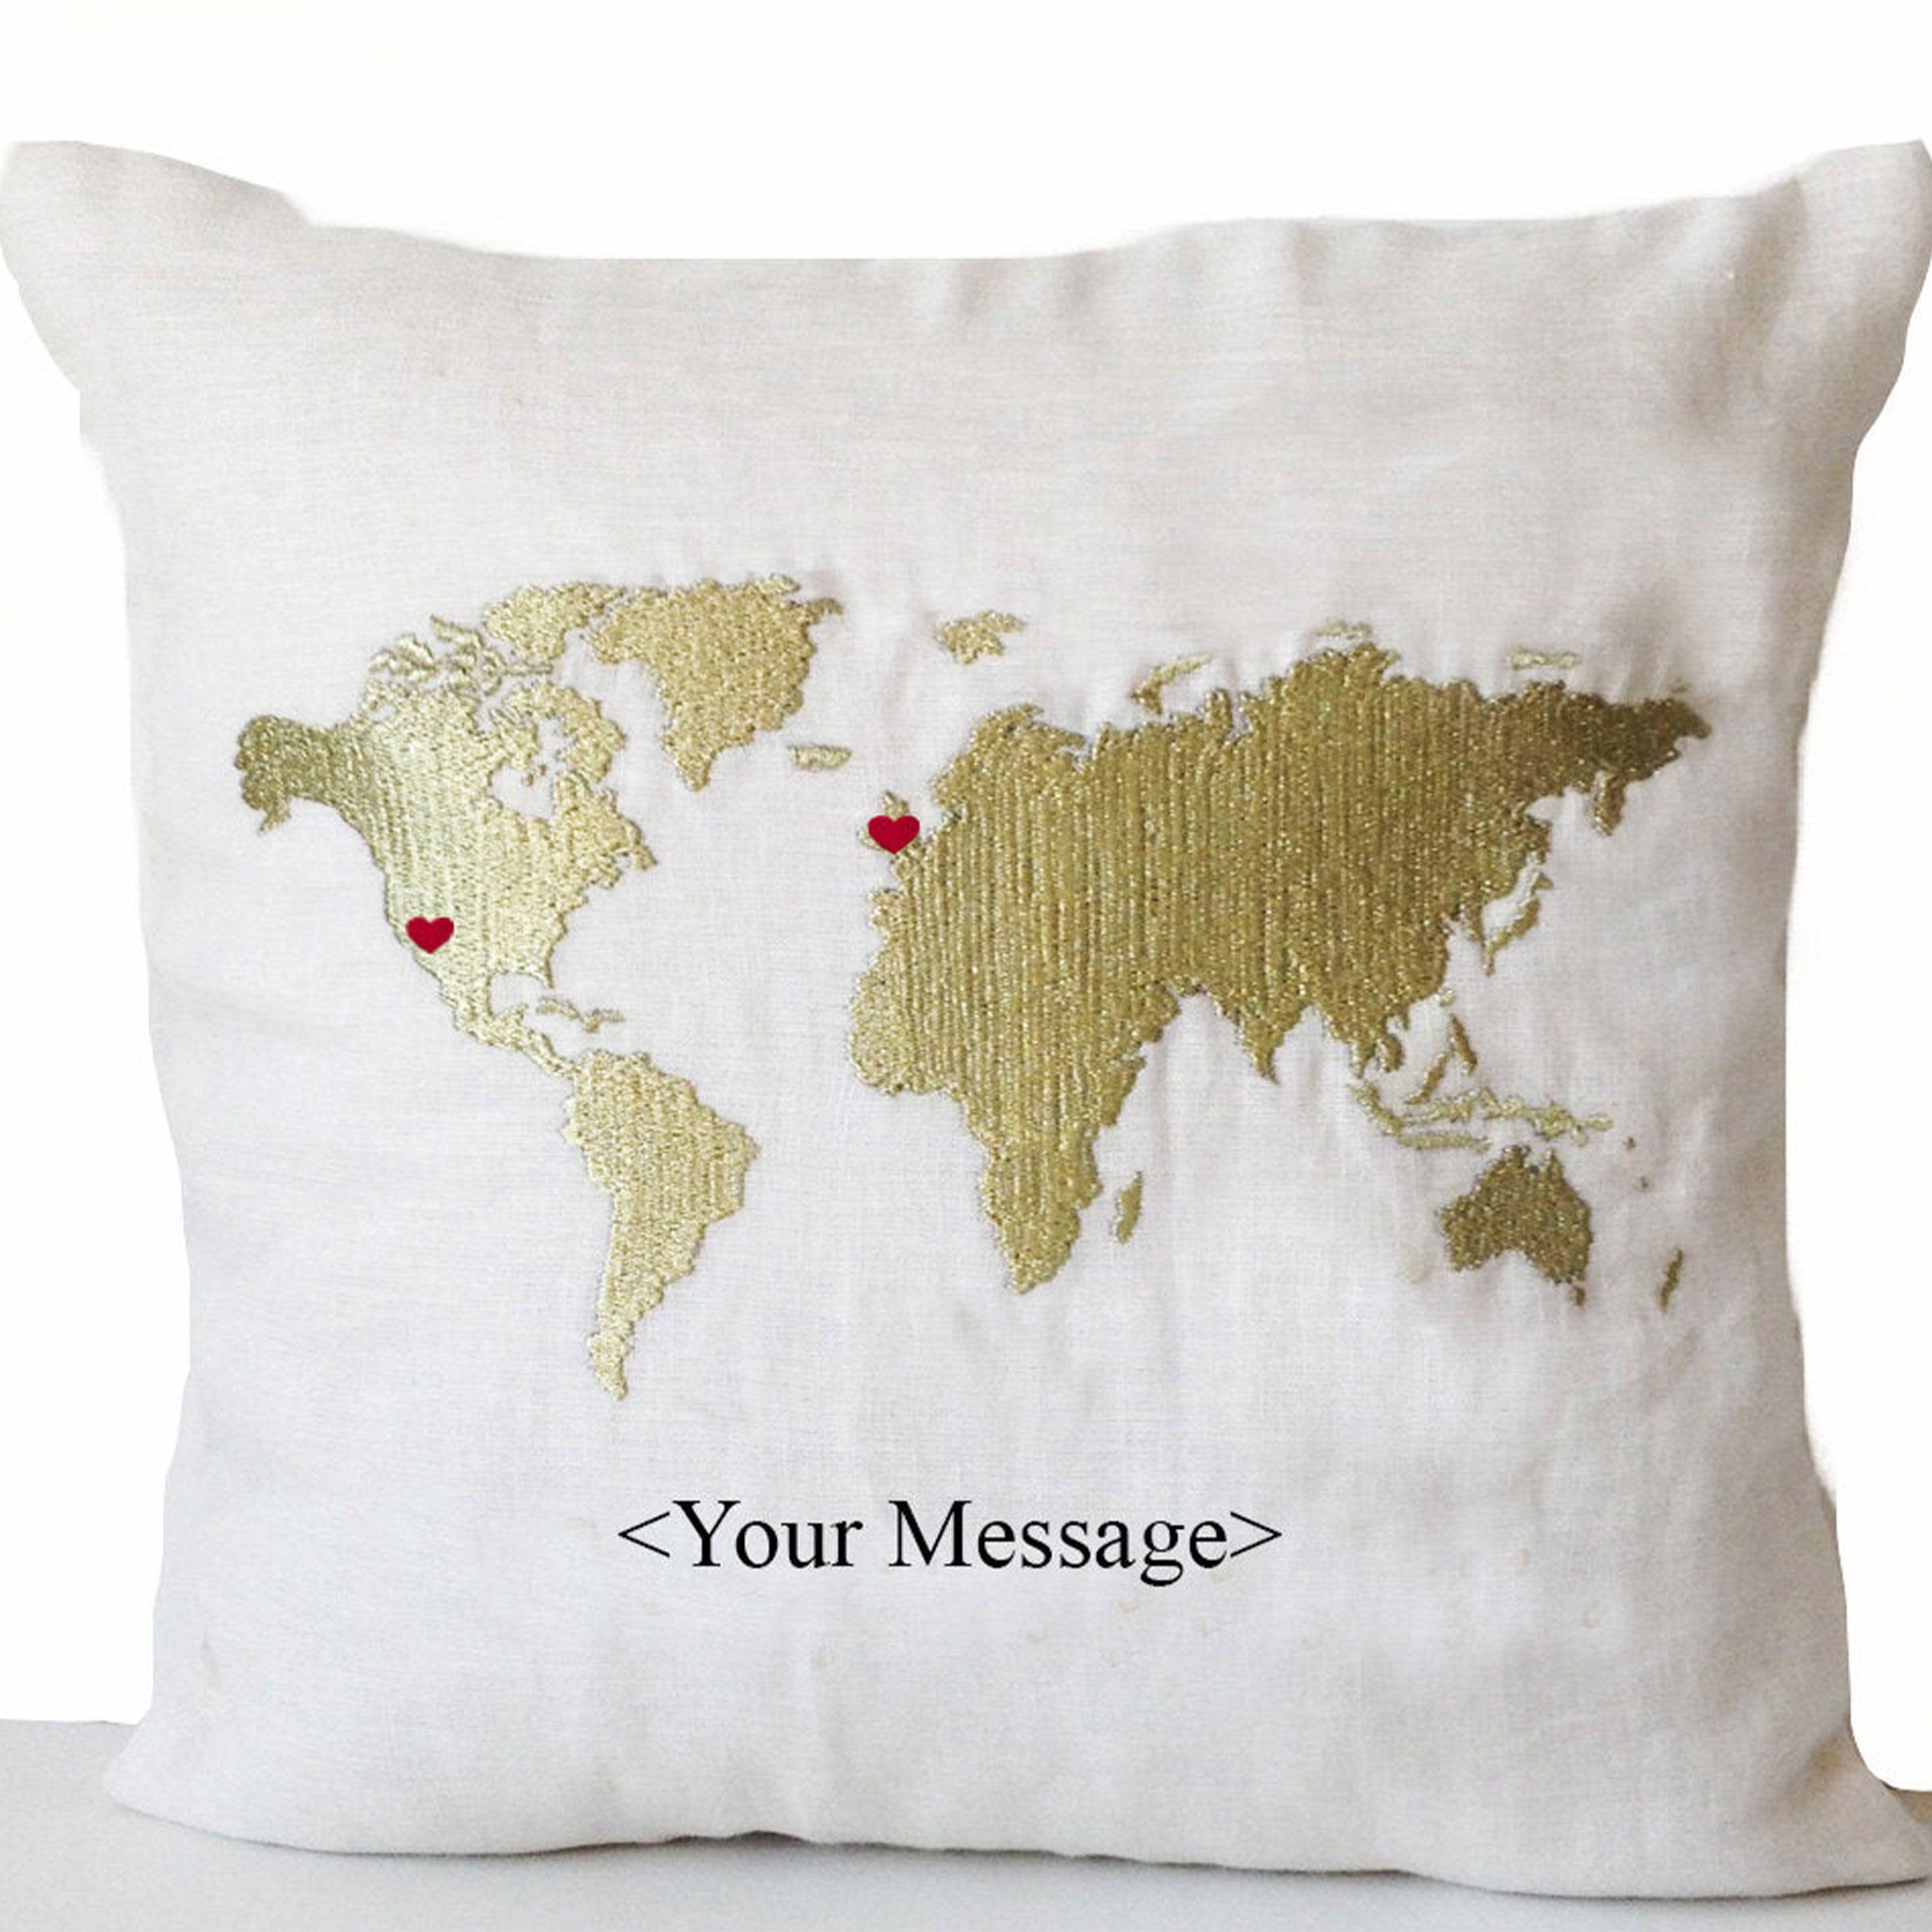 Long Distance Relationship Pillow, Gold World Map Heart,Decorative pillow,Throw pillow